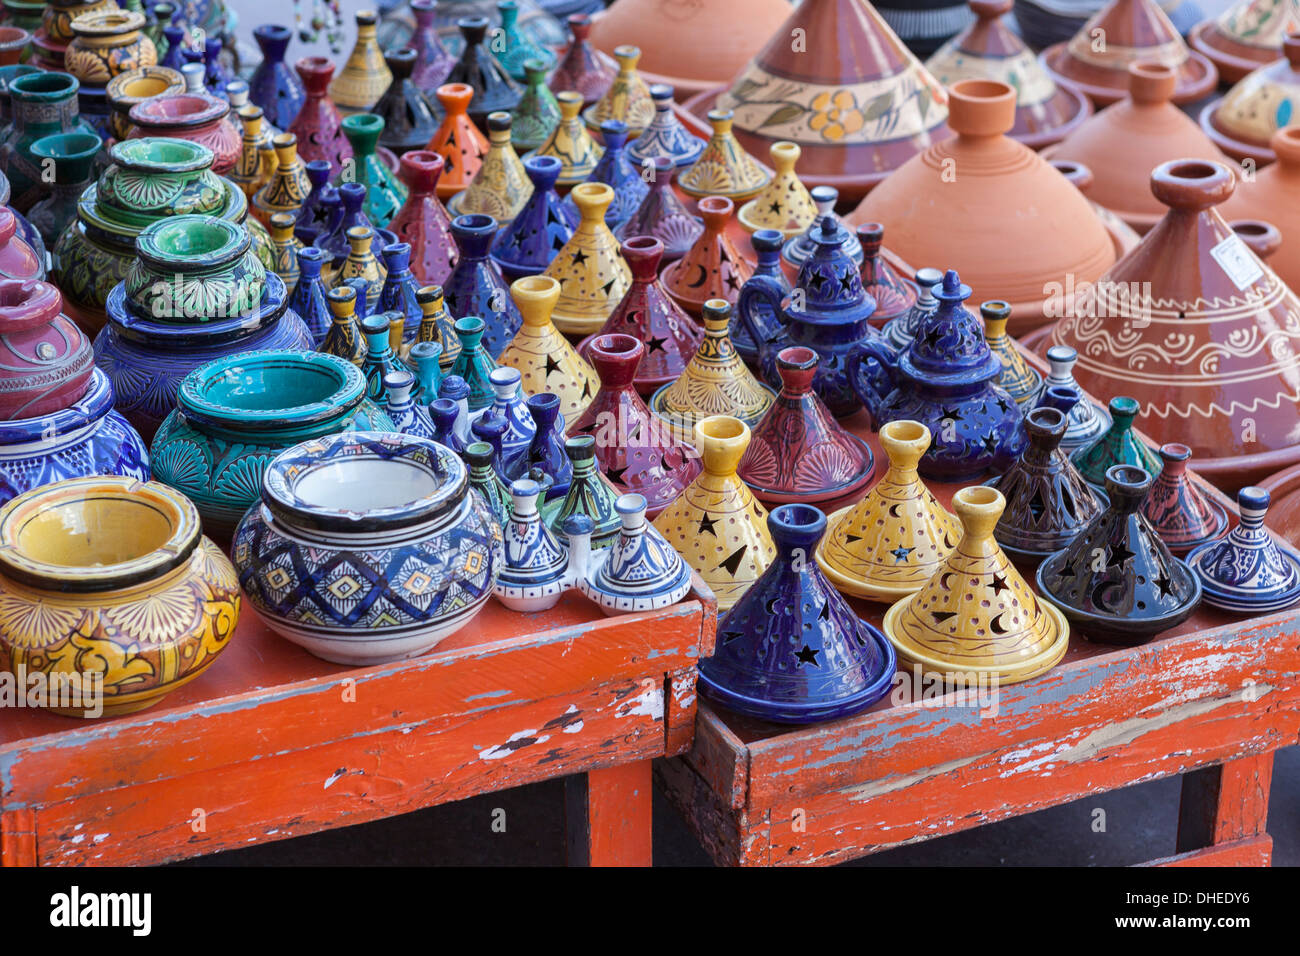 Un vendeur de rue, y compris les marchandises tagines et des pots d'argile près de la Kasbah, Marrakech, Maroc, Afrique du Nord, Afrique Banque D'Images